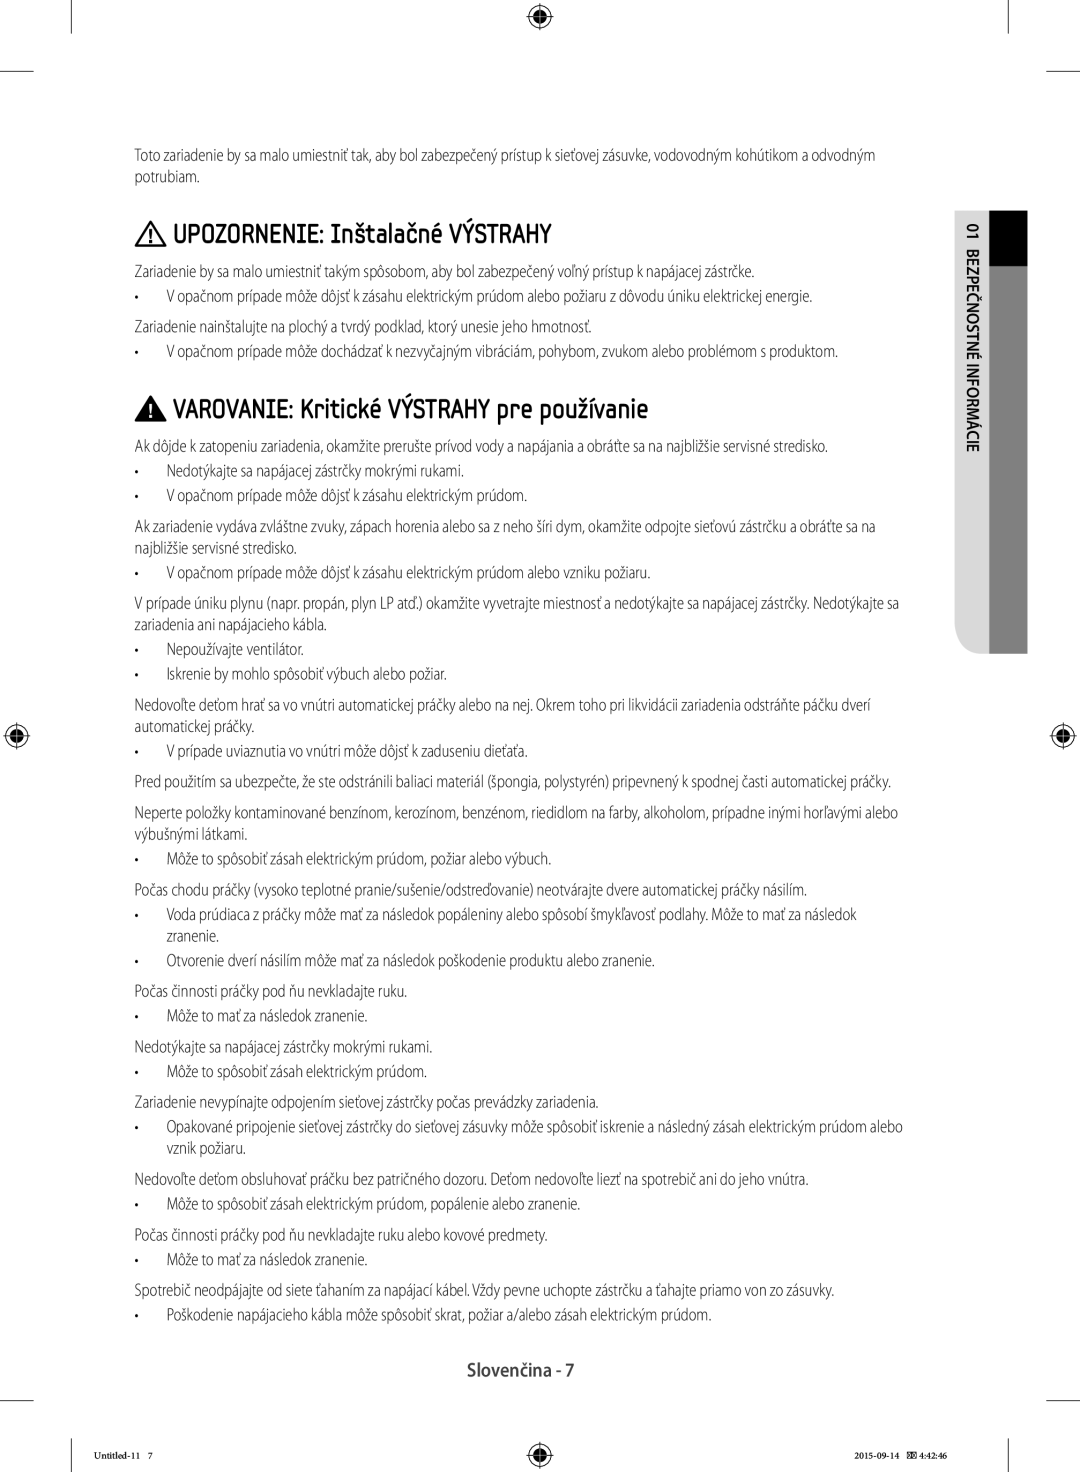 Samsung WF60F4E3W0W/EO manual UPOZORNENIE Inštalačné VÝSTRAHY, VAROVANIE Kritické VÝSTRAHY pre používanie, Slovenčina 